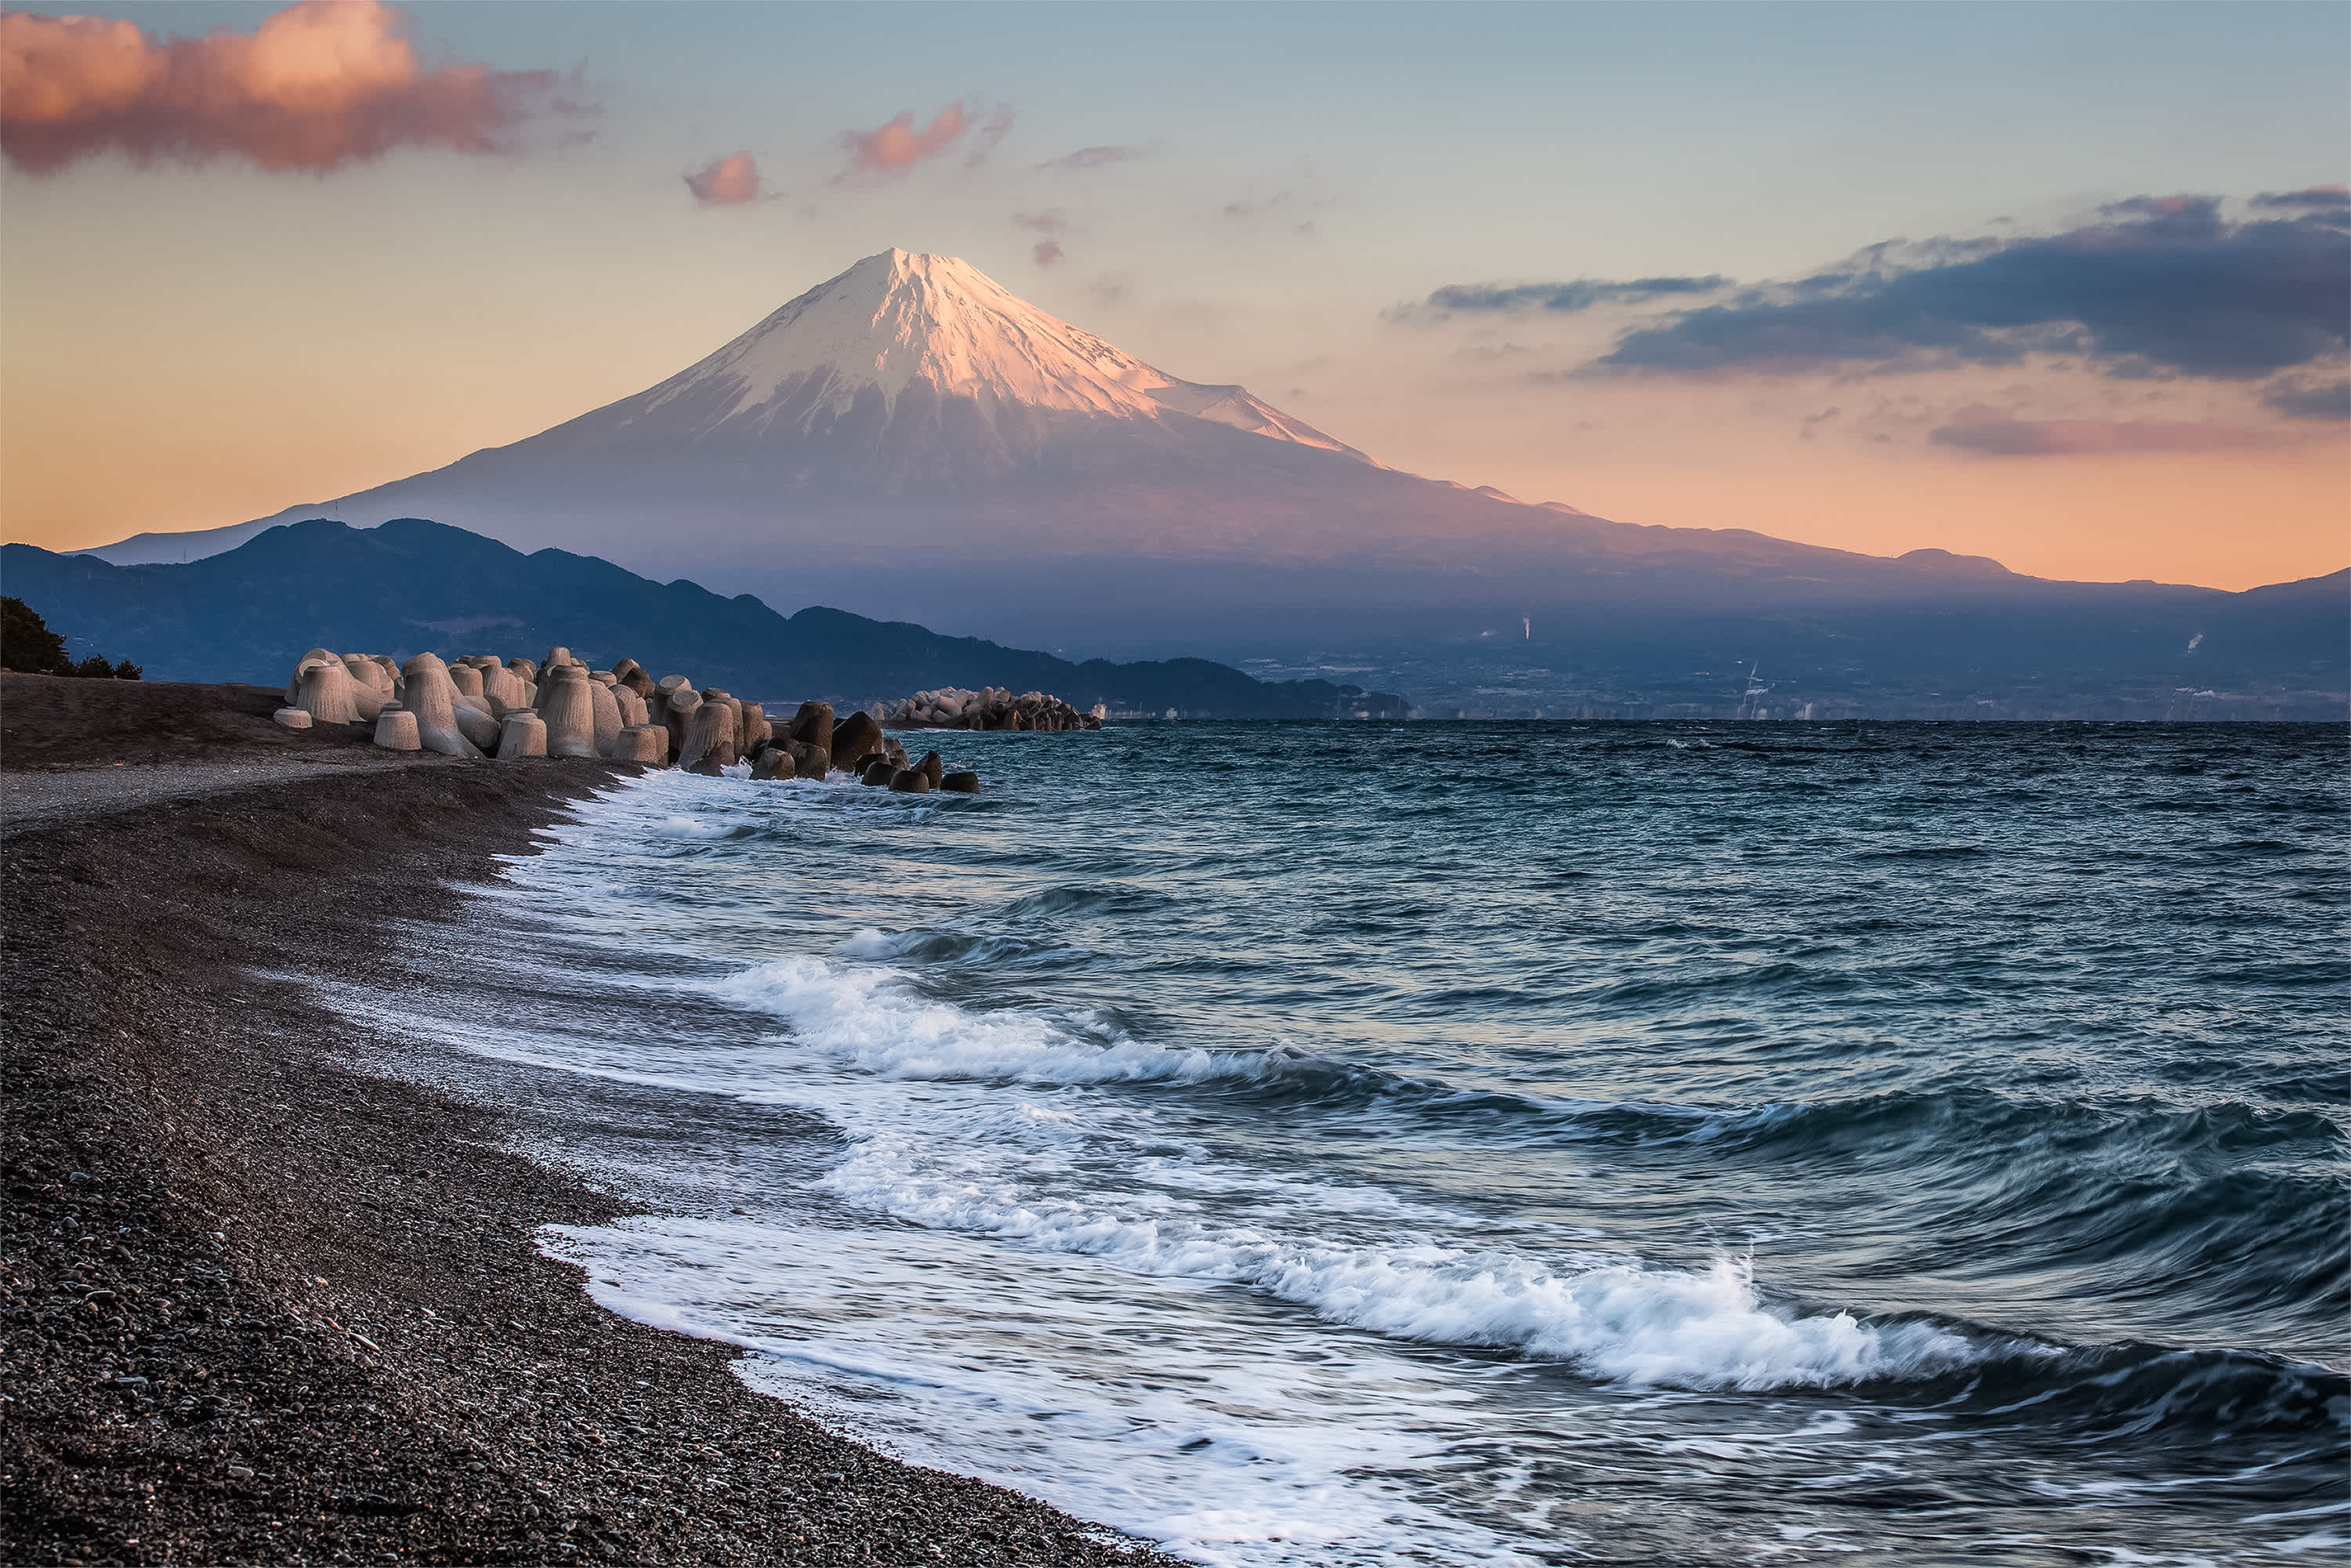 Plage sombre au bord de la mer avec le Mont Fuji en arrière-plan, au Japon